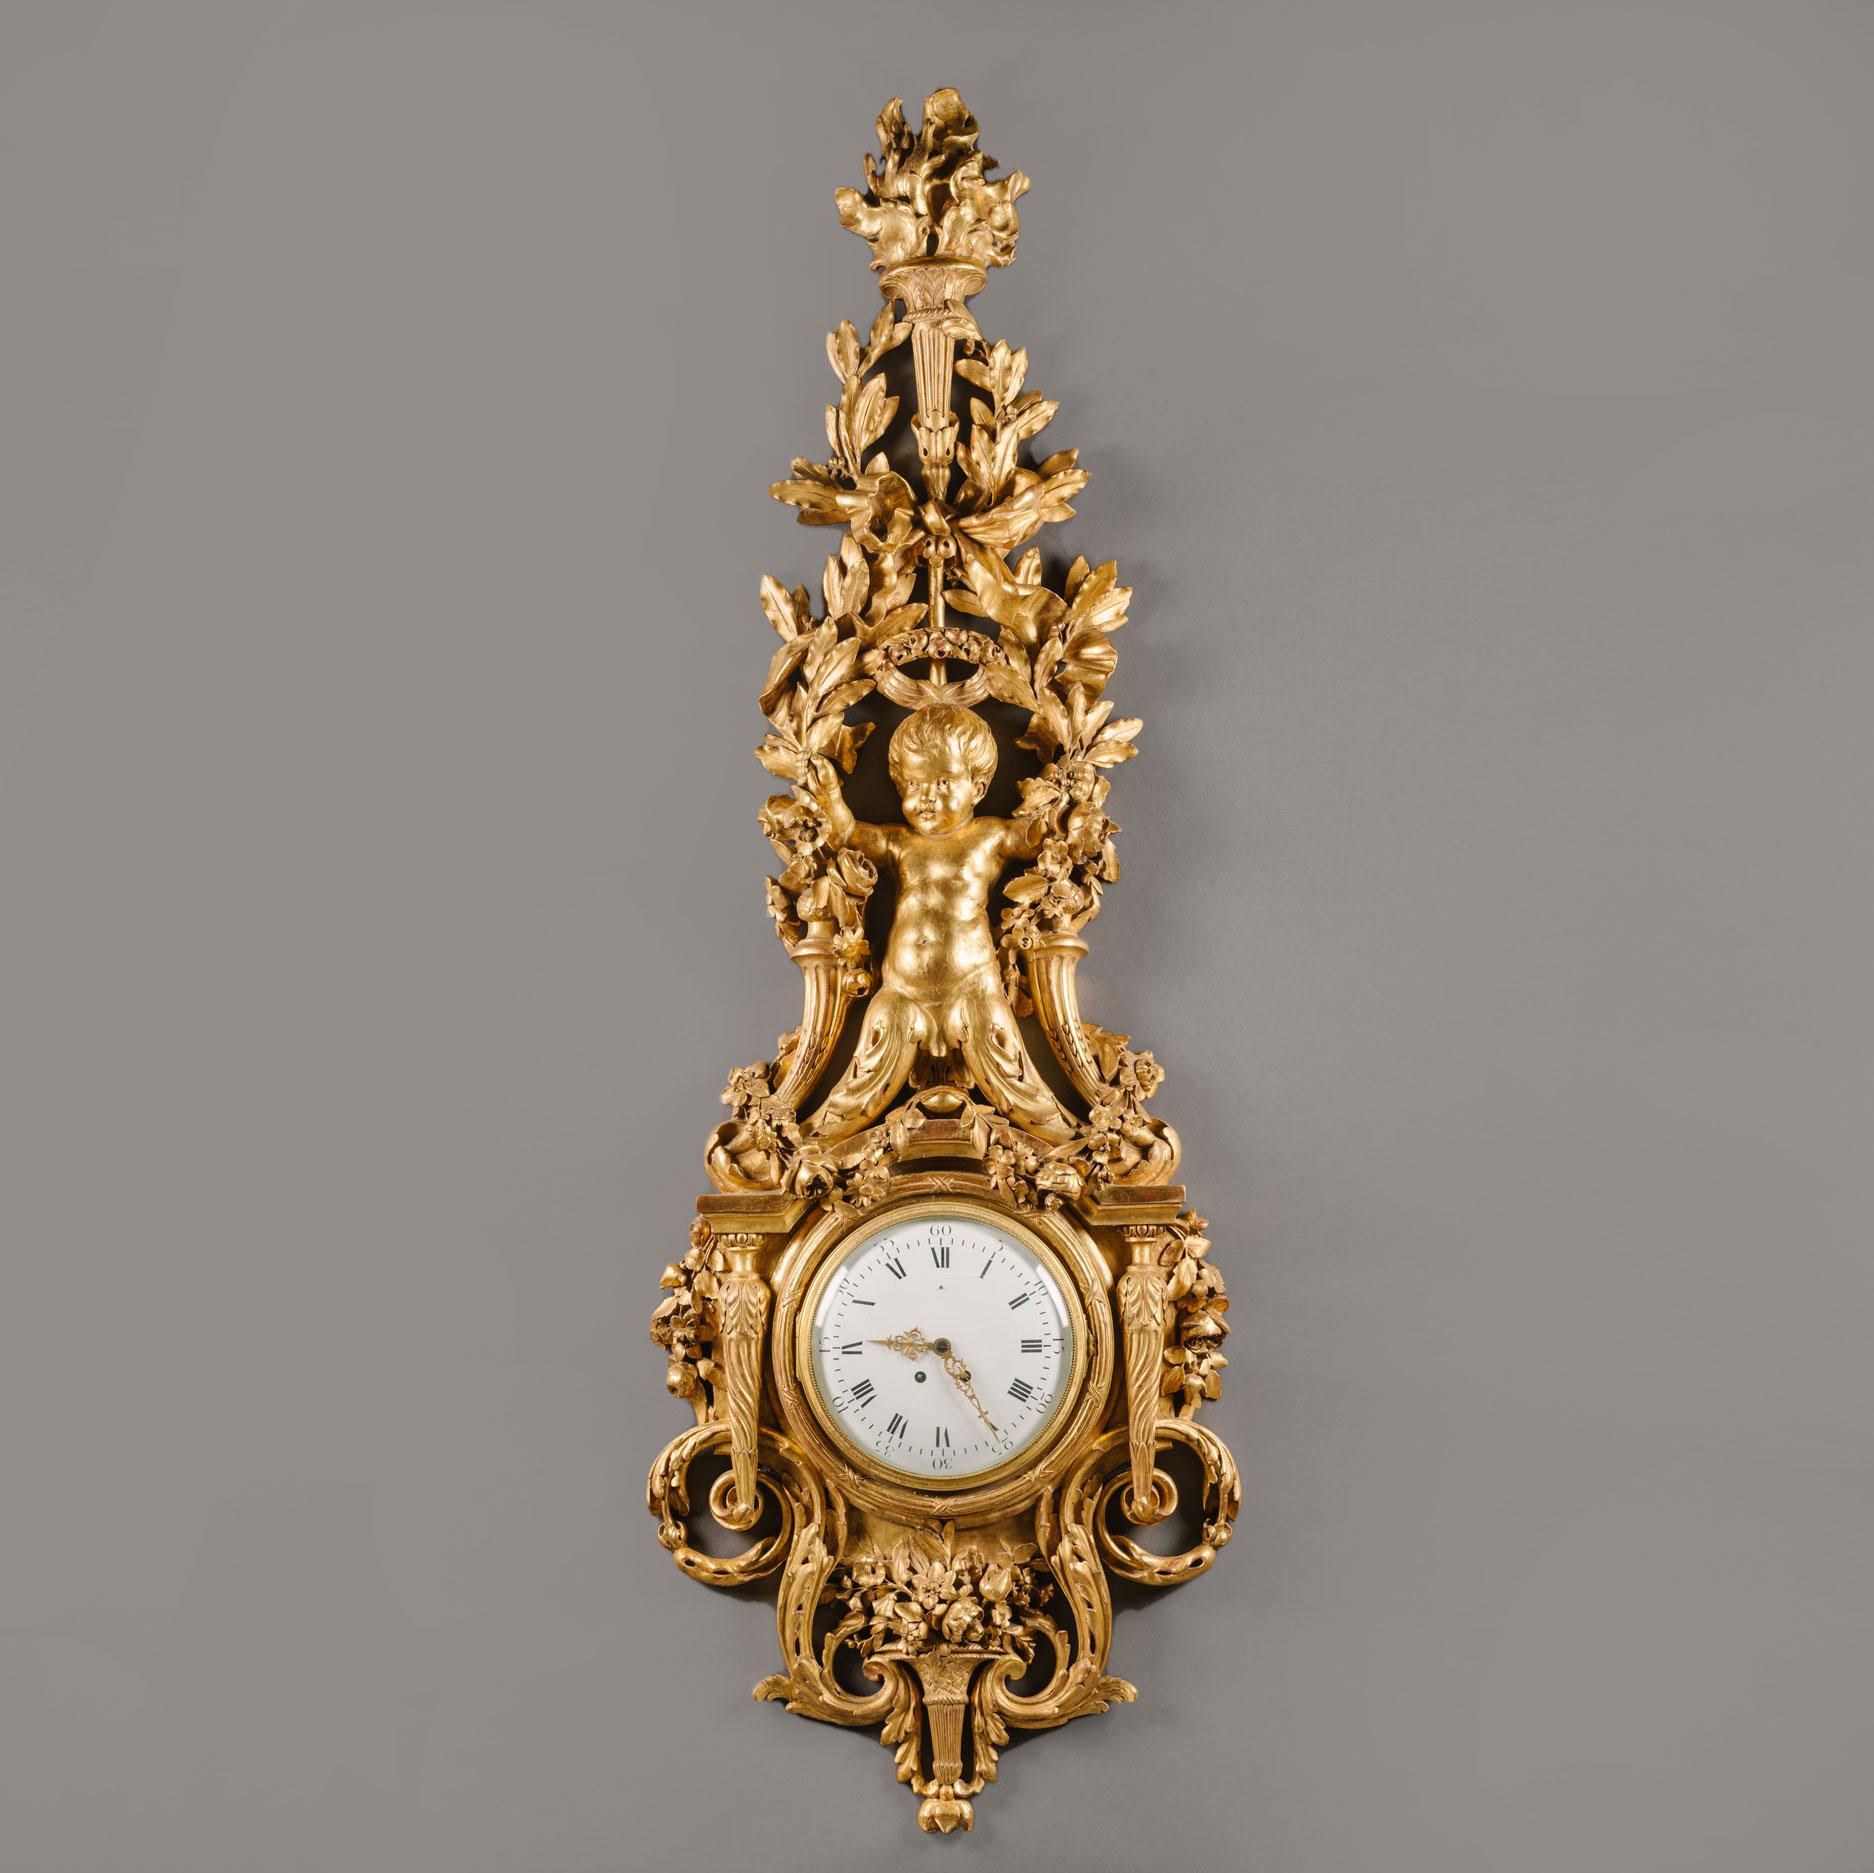 Eine große und wichtige Louis XVI Stil geschnitzt vergoldet Uhr und Barometer gesetzt.

Beide mit kreisförmigen Emailzifferblättern, die Uhr mit römischen und arabischen Ziffern und durchbrochenen, gerollten Zeigern. Das dazugehörige Barometer mit